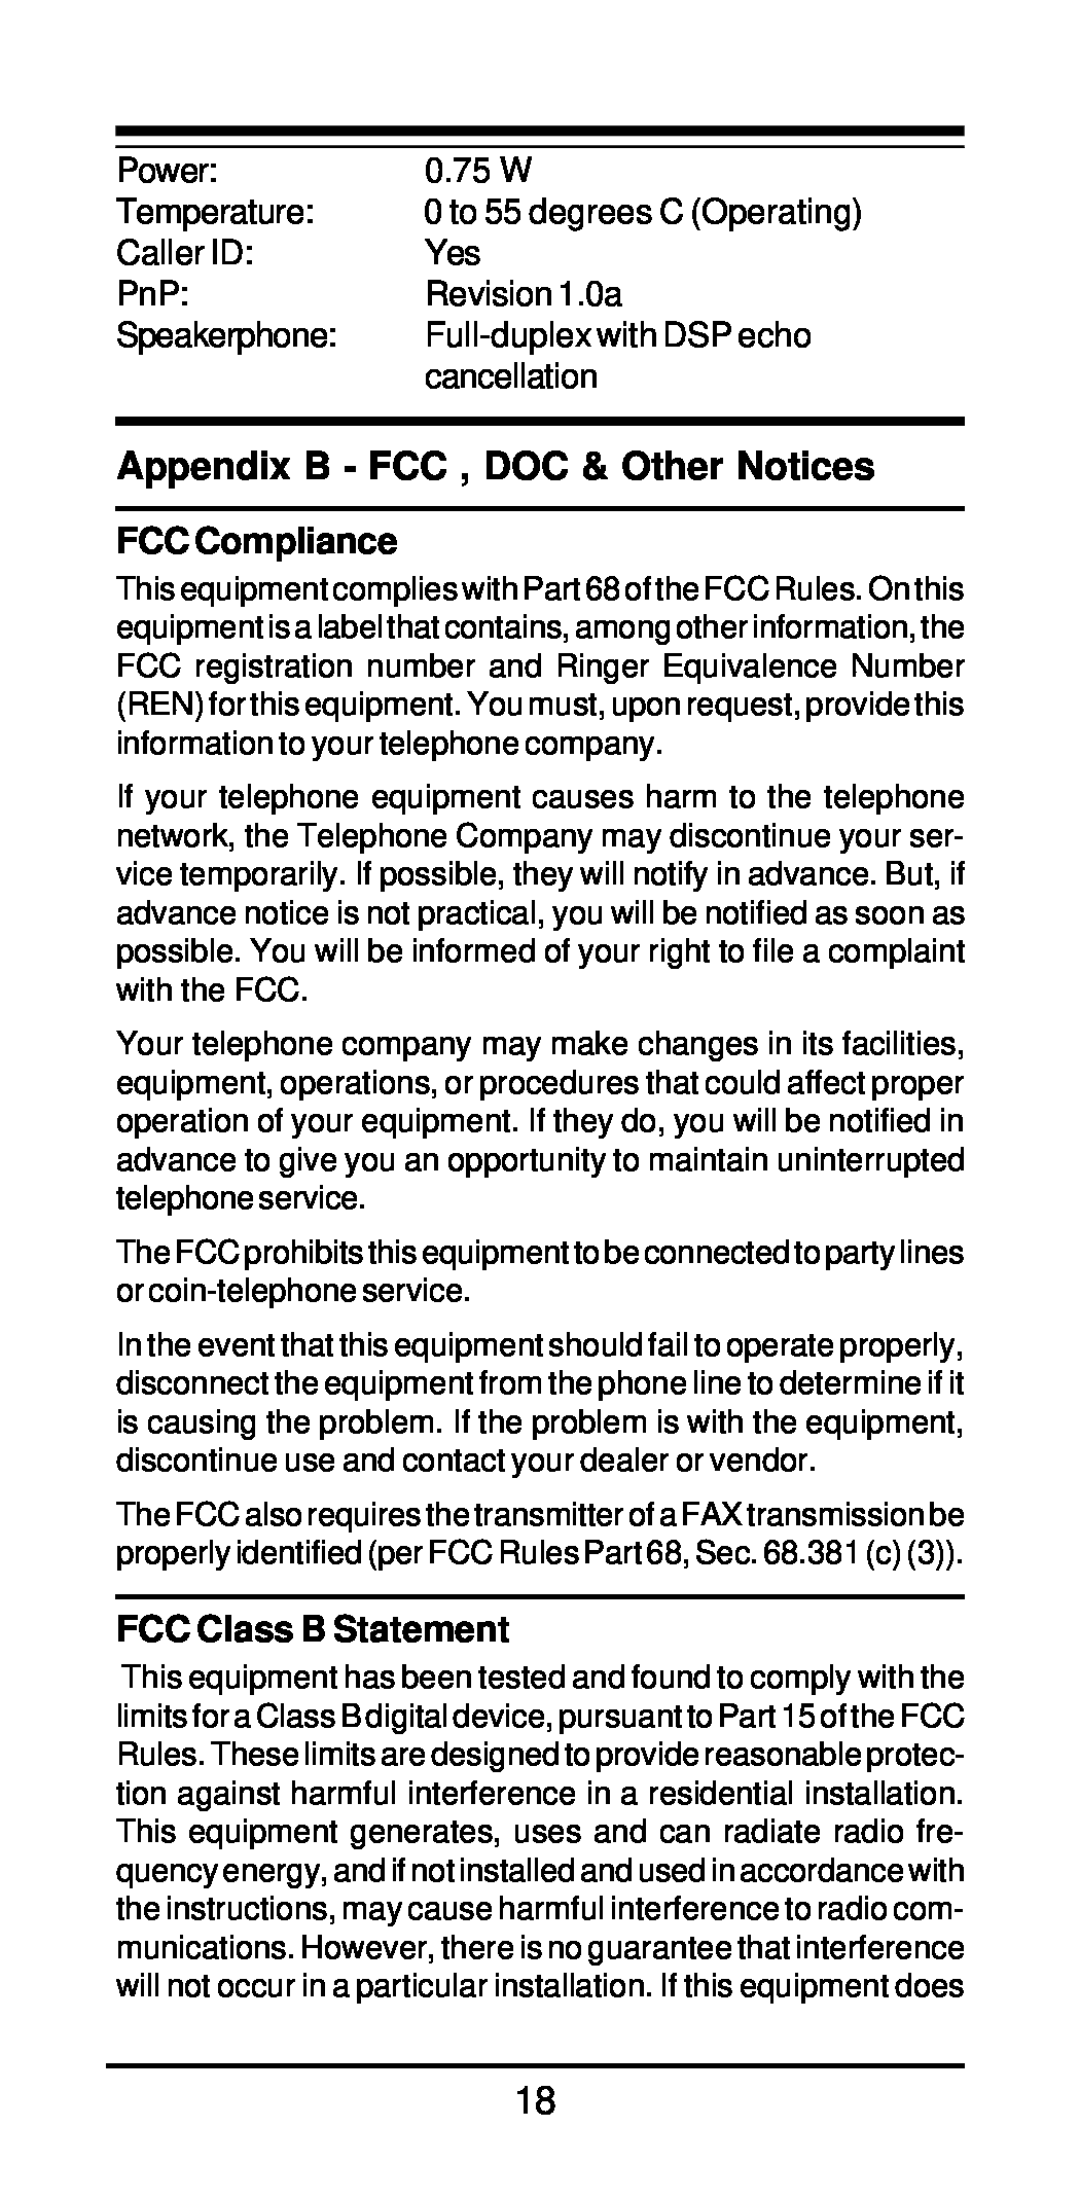 MaxTech xpvs336i user manual Appendix B - FCC , DOC & Other Notices, FCC Compliance, FCC Class B Statement 